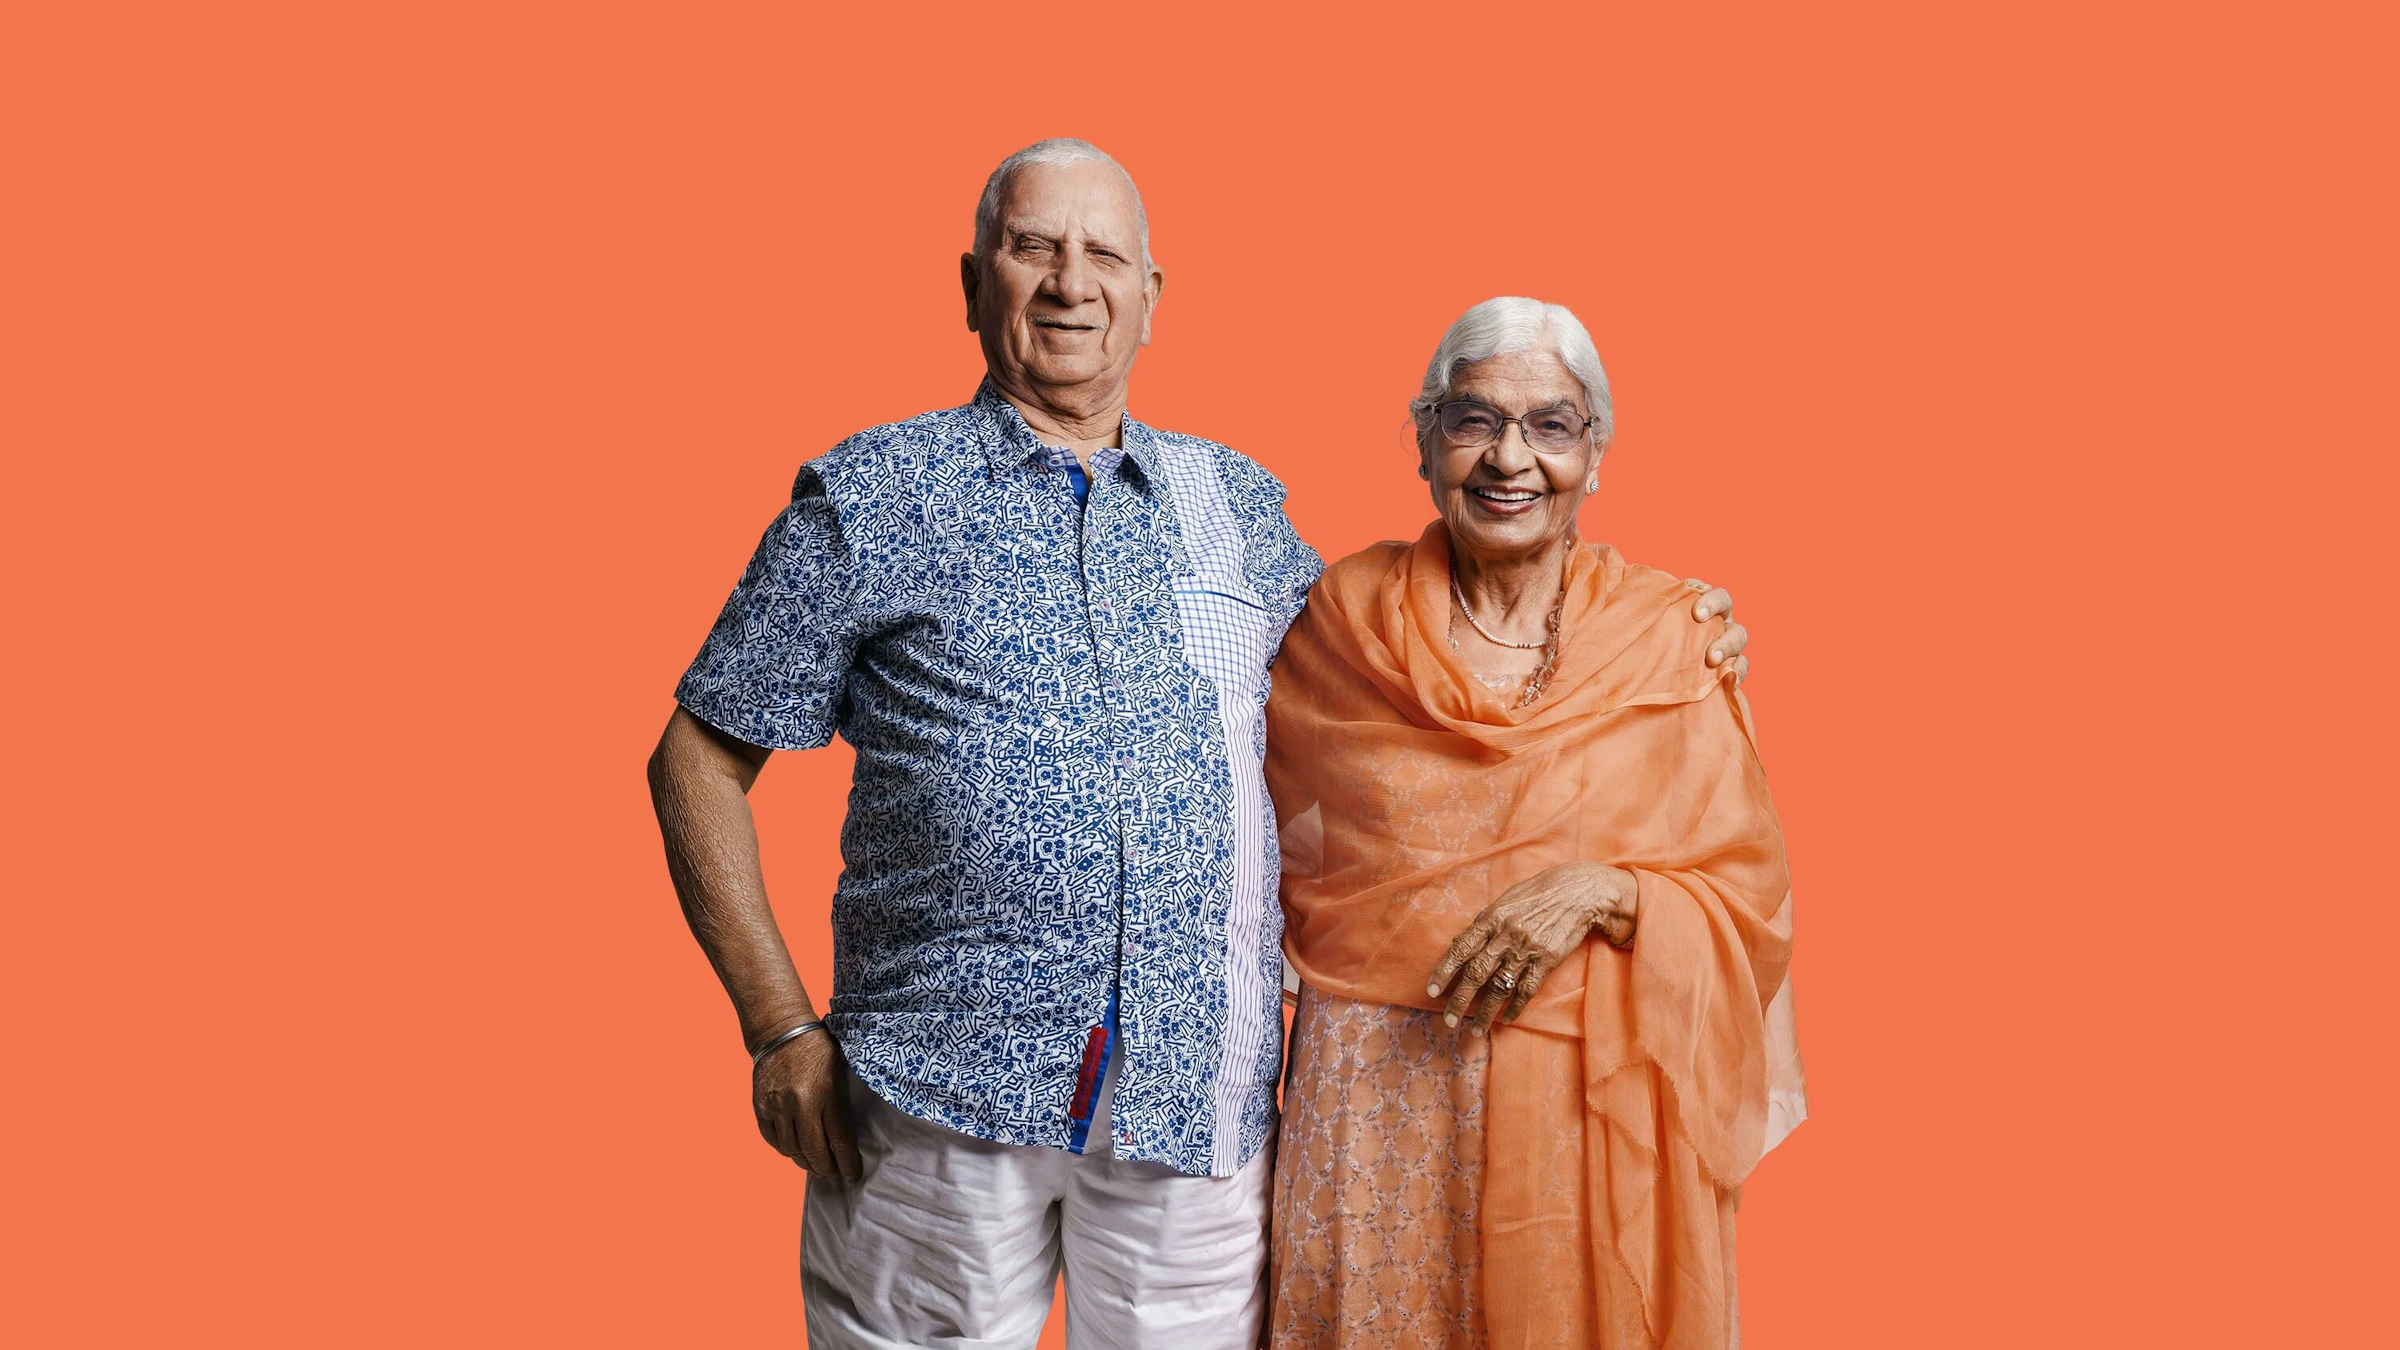 Elderly couple embracing and smiling on orange background